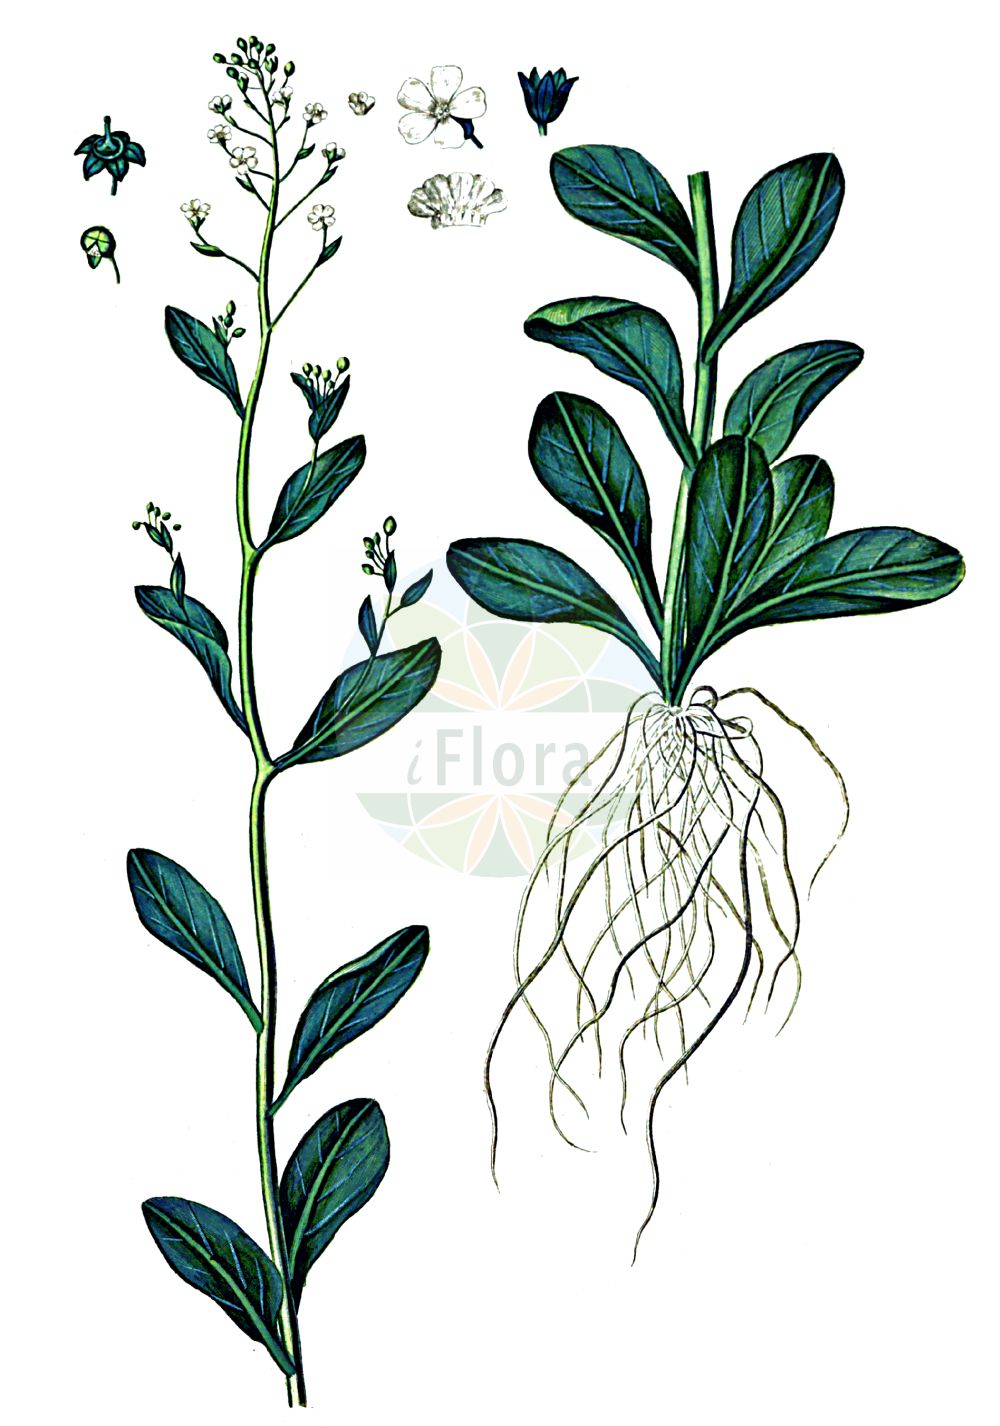 Historische Abbildung von Samolus valerandi (Salz-Bunge - Brookweed). Das Bild zeigt Blatt, Bluete, Frucht und Same. ---- Historical Drawing of Samolus valerandi (Salz-Bunge - Brookweed). The image is showing leaf, flower, fruit and seed.(Samolus valerandi,Salz-Bunge,Brookweed,Samolus valerandi,Salz-Bunge,Brookweed,Seaside Brookweed,Samolus,Salzbunge,Brookweed,Primulaceae,Schlüsselblumengewächse,Primrose family,Blatt,Bluete,Frucht,Same,leaf,flower,fruit,seed,Oeder (1761-1883))